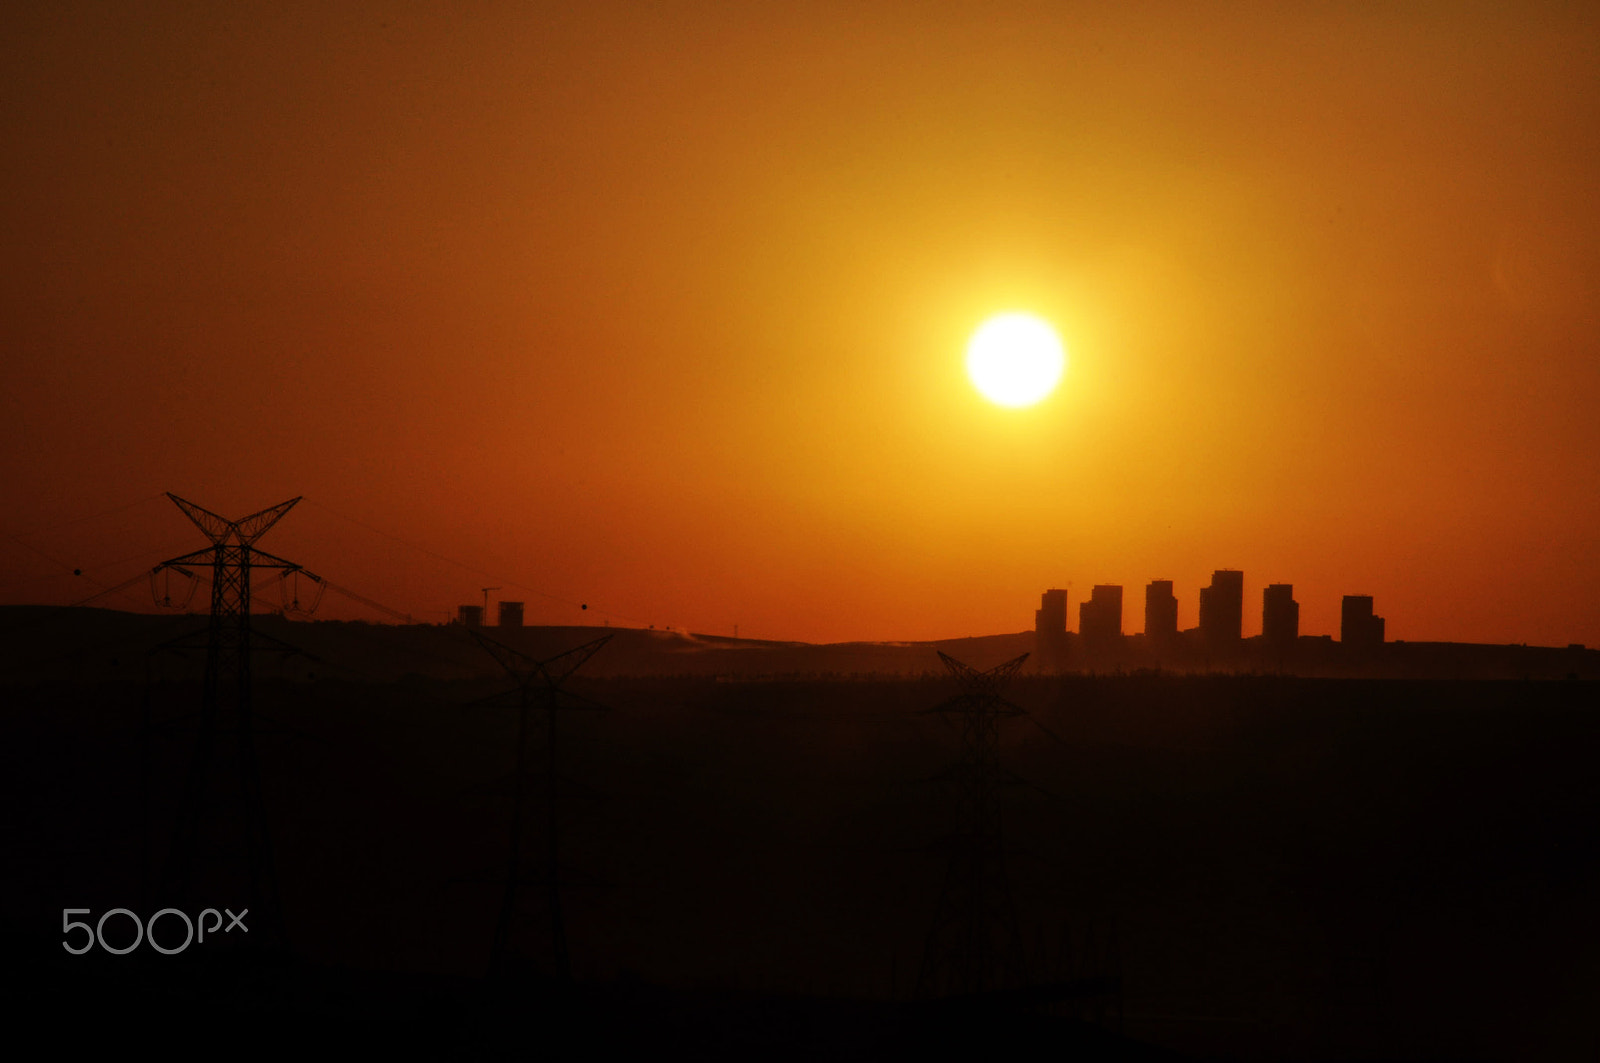 Nikon D90 sample photo. Gün batımı (sunset) photography